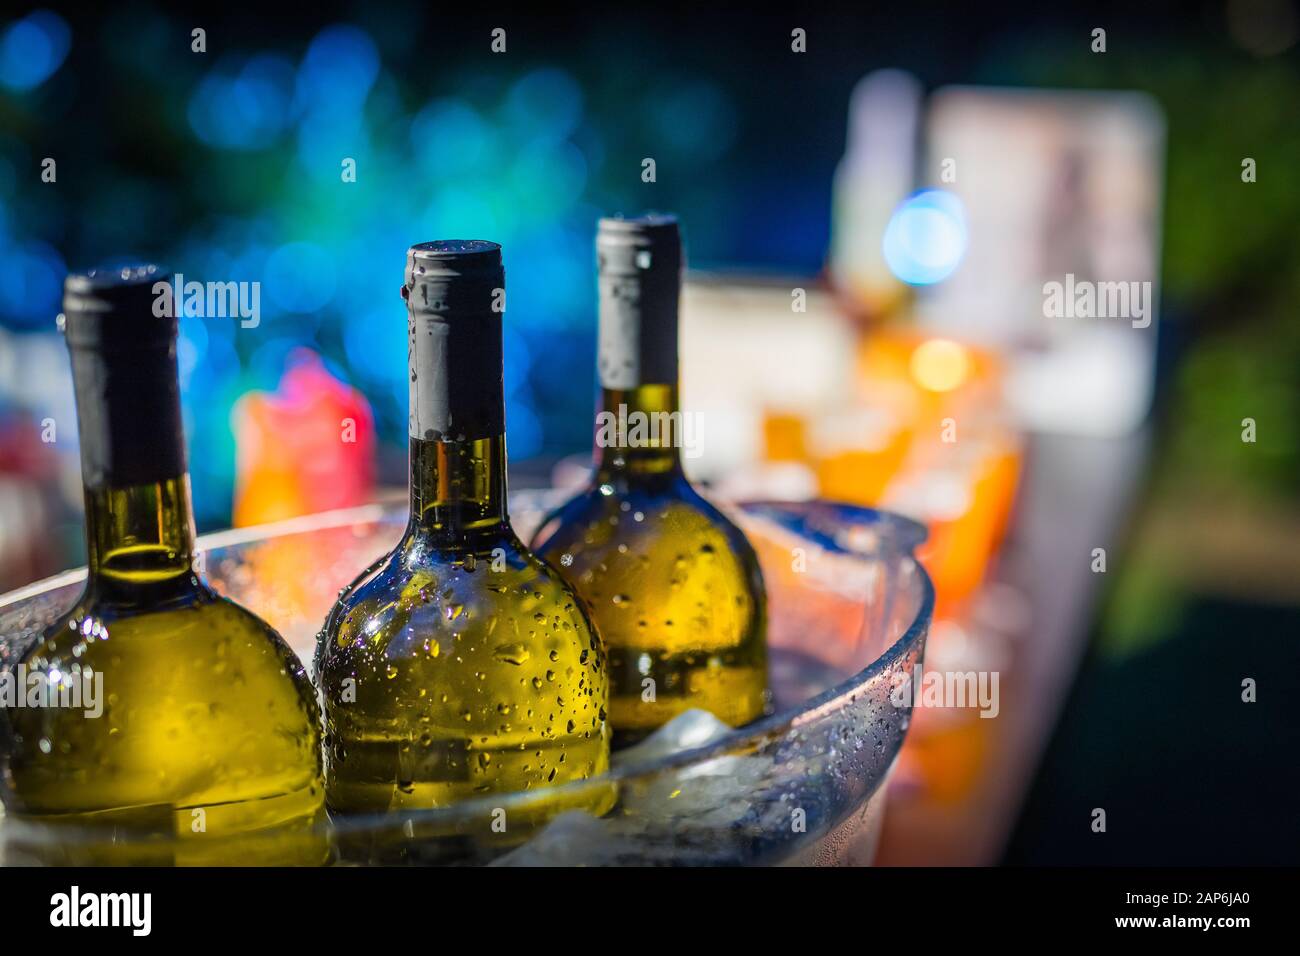 Row of green wine bottles on ice Stock Photo